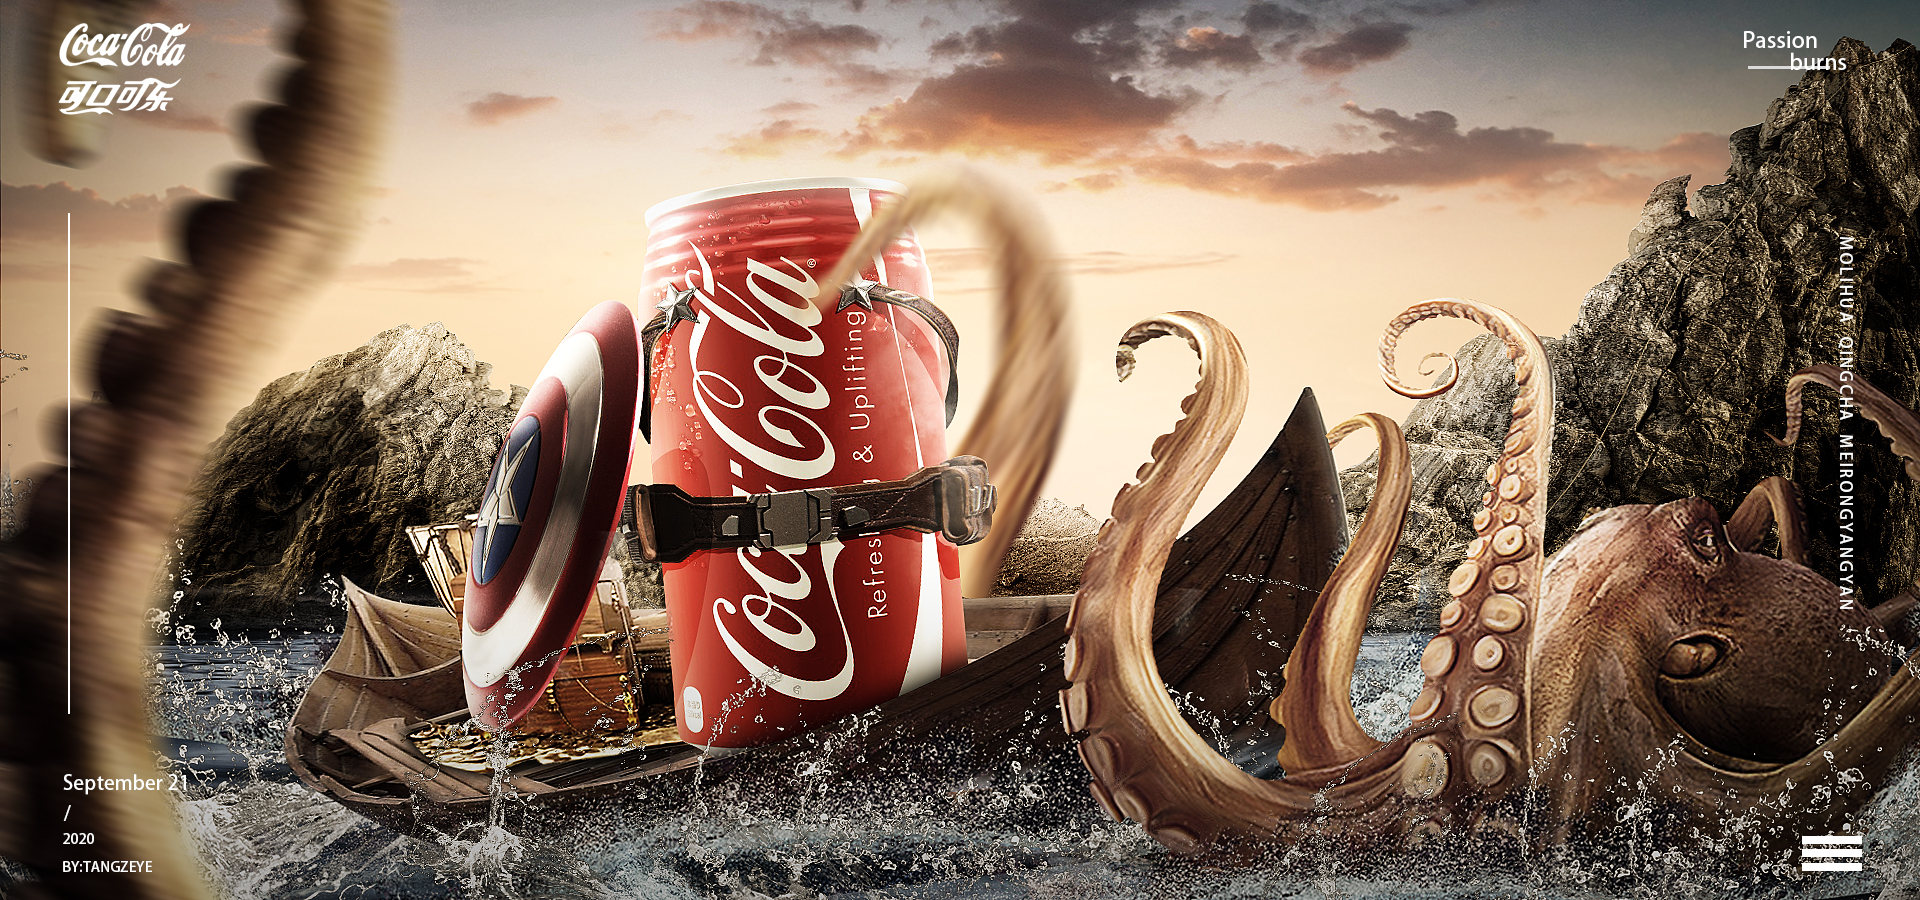 可口可乐创意海报分析图片